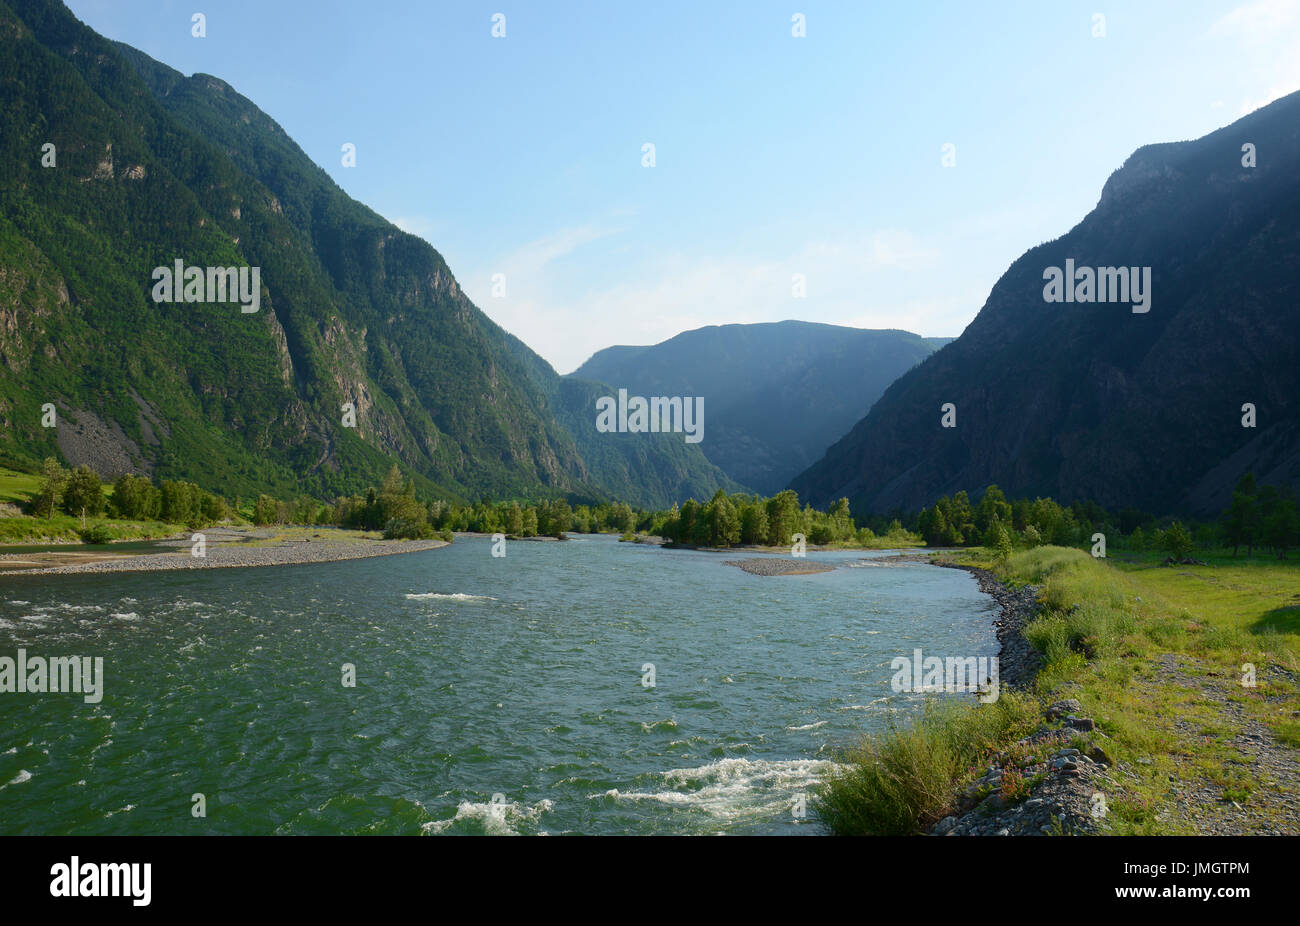 Bashkaus rivière coule entre les collines en montagnes de l'Altaï. République de l'Altaï, en Sibérie, Russie Banque D'Images